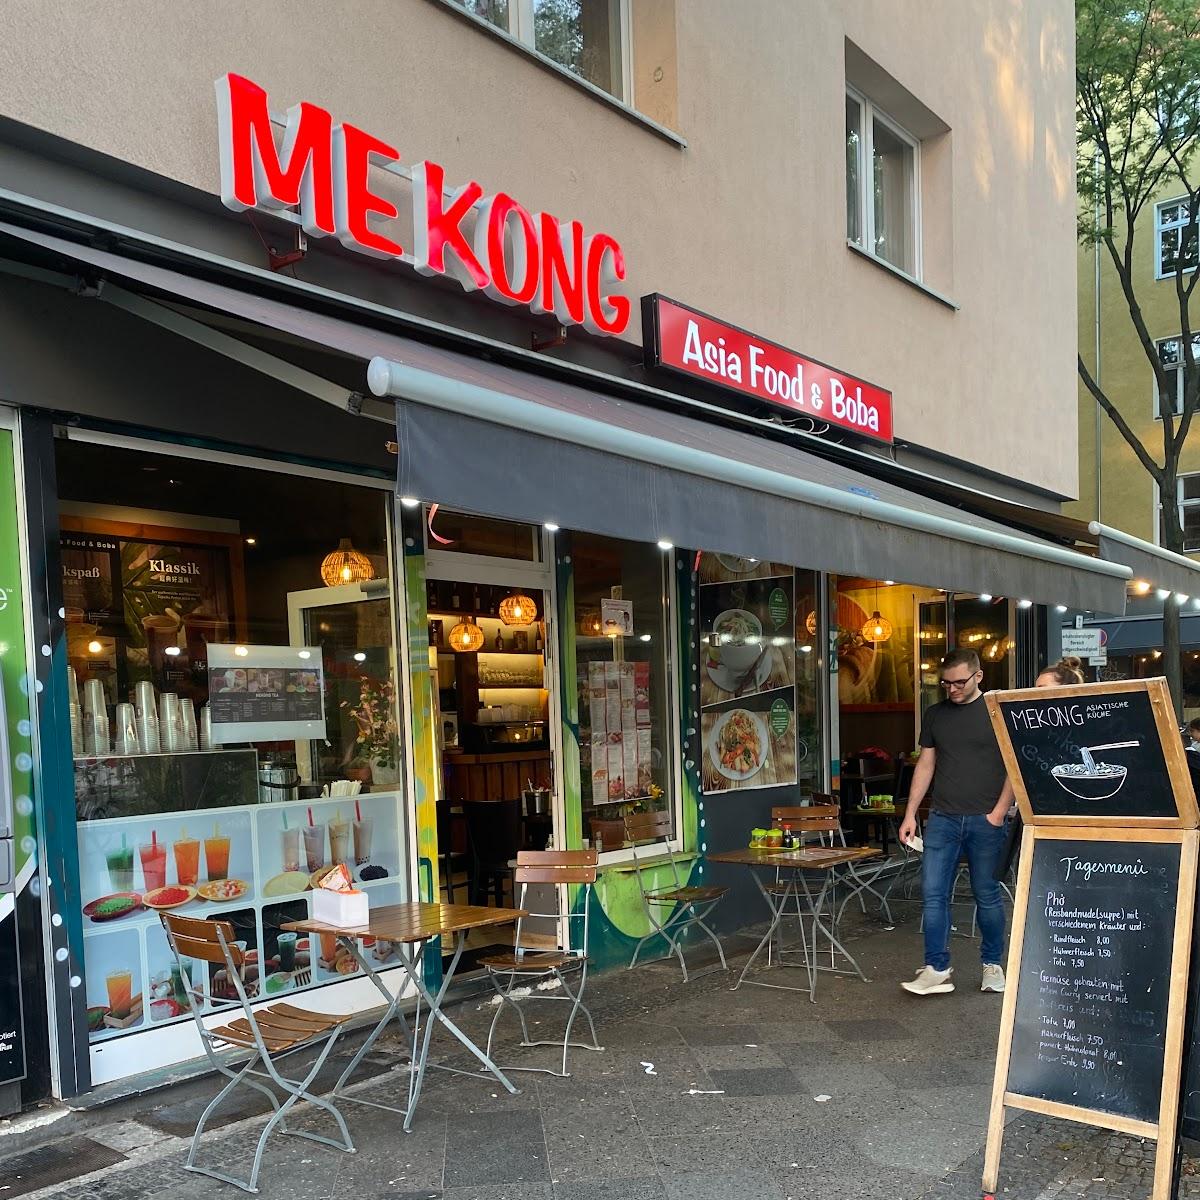 Restaurant "MEKONG" in Berlin